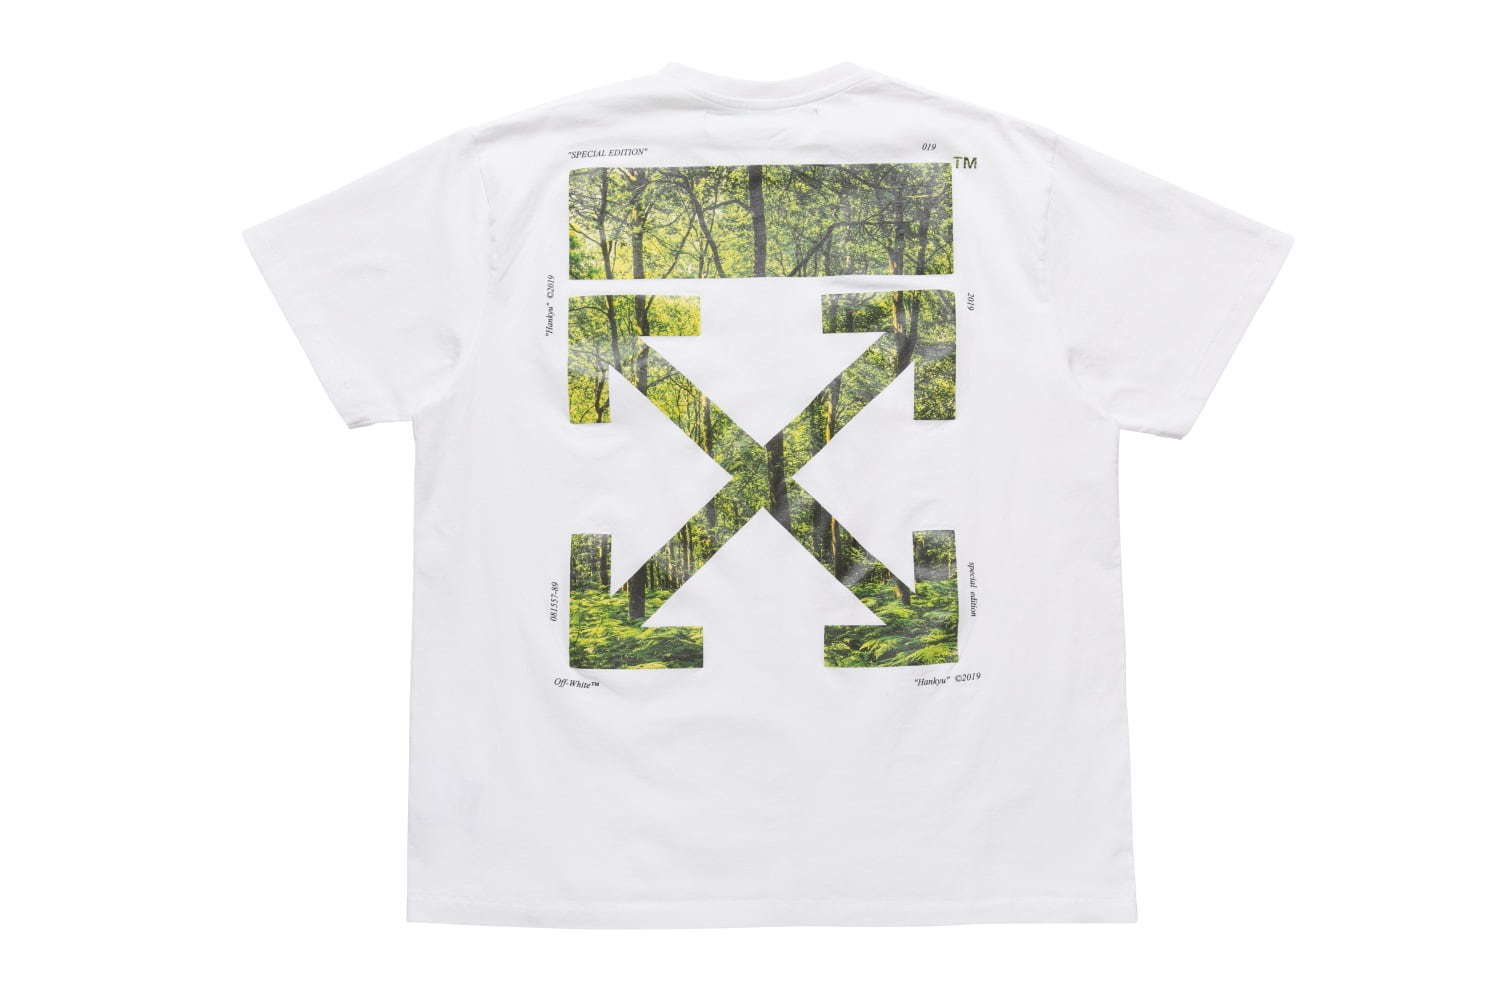 オフ ホワイト新コンセプトショップ ランドスケープ 阪急メンズ東京に 森林風景モチーフの限定tシャツ ファッションプレス